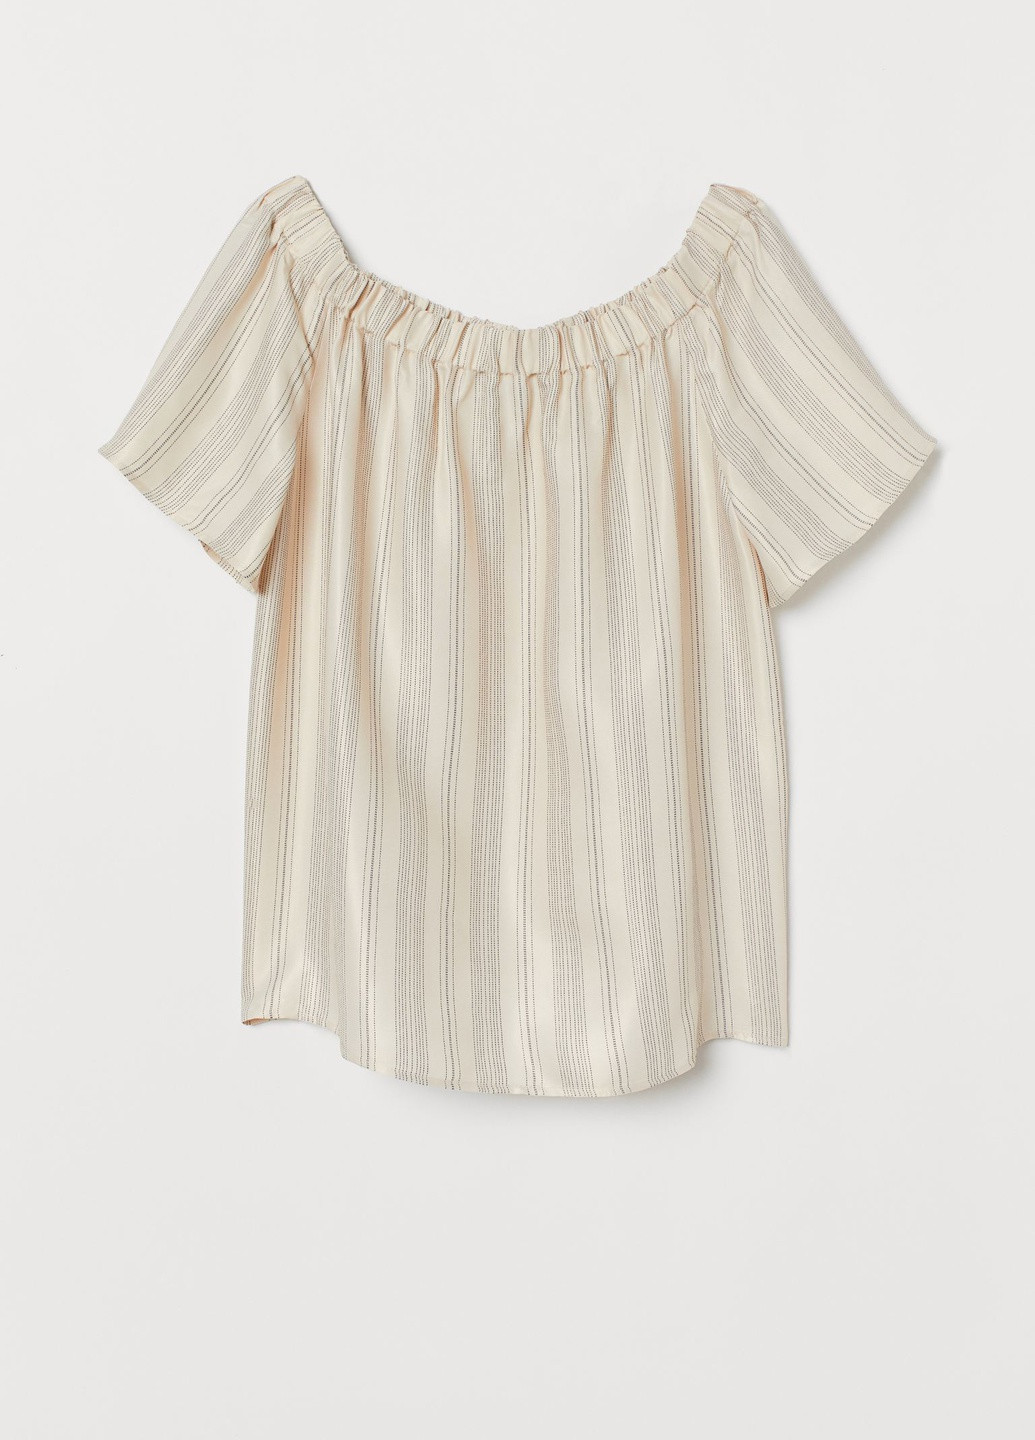 Белая блузка с открытыми плечами H&M